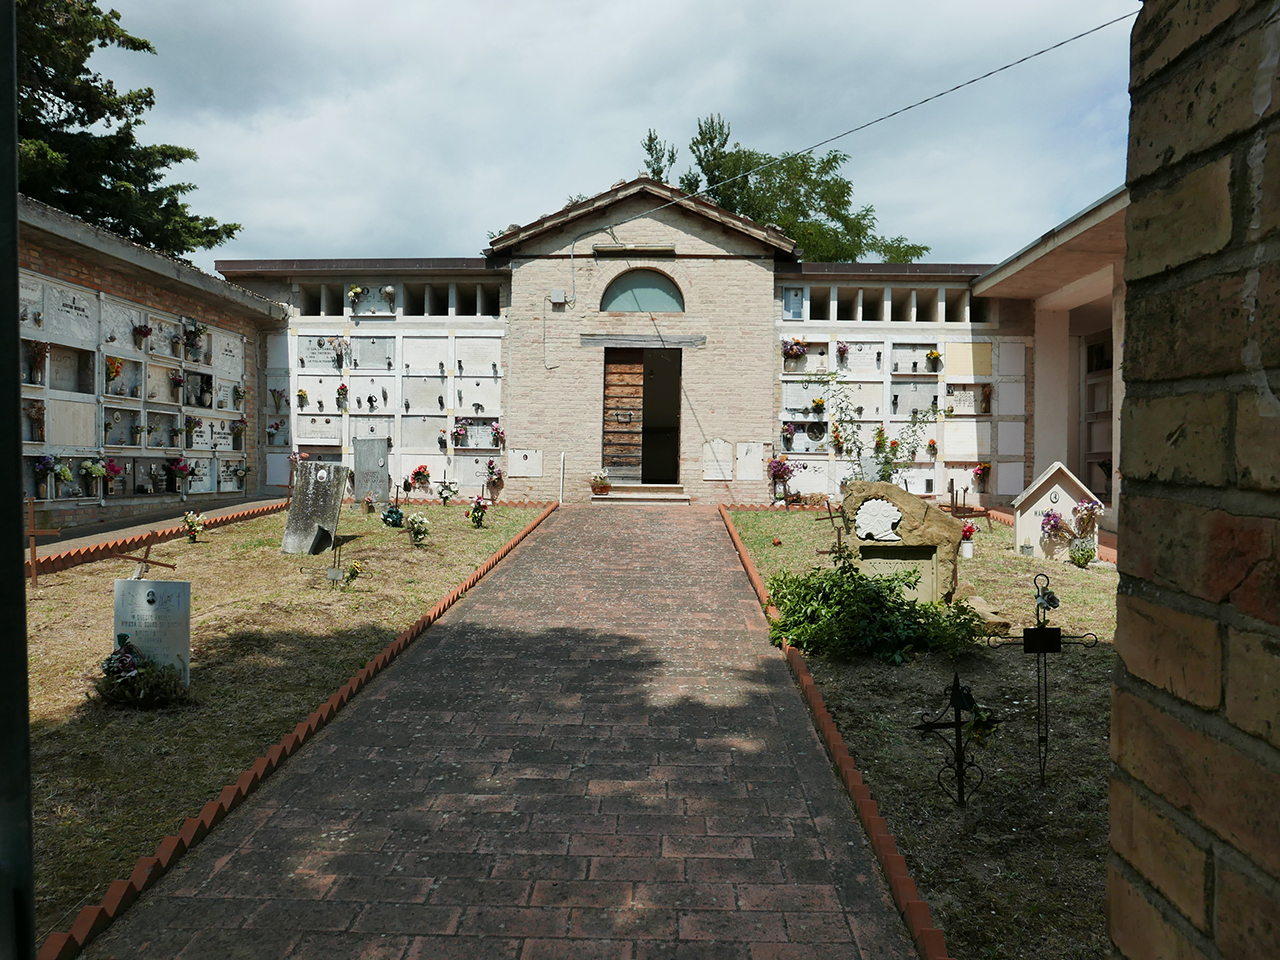 Cimitero di Cerreto (cimitero, rurale) - San Ginesio (MC) 